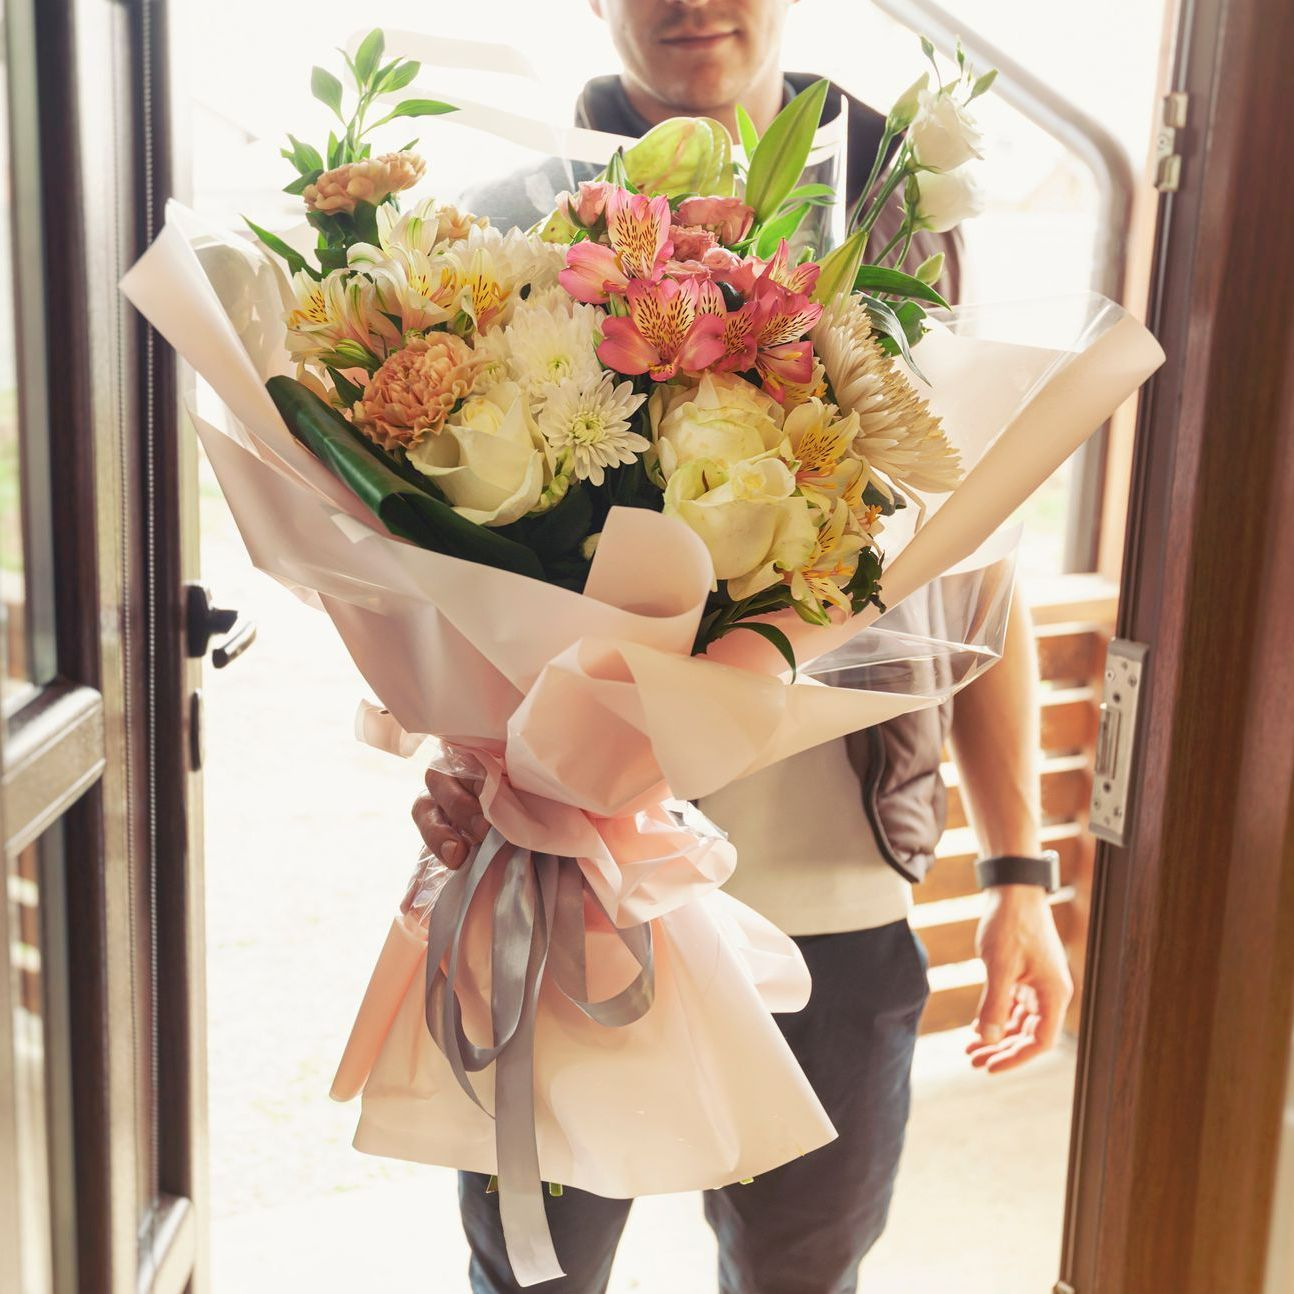 Un livreur tend un bouquet de fleurs